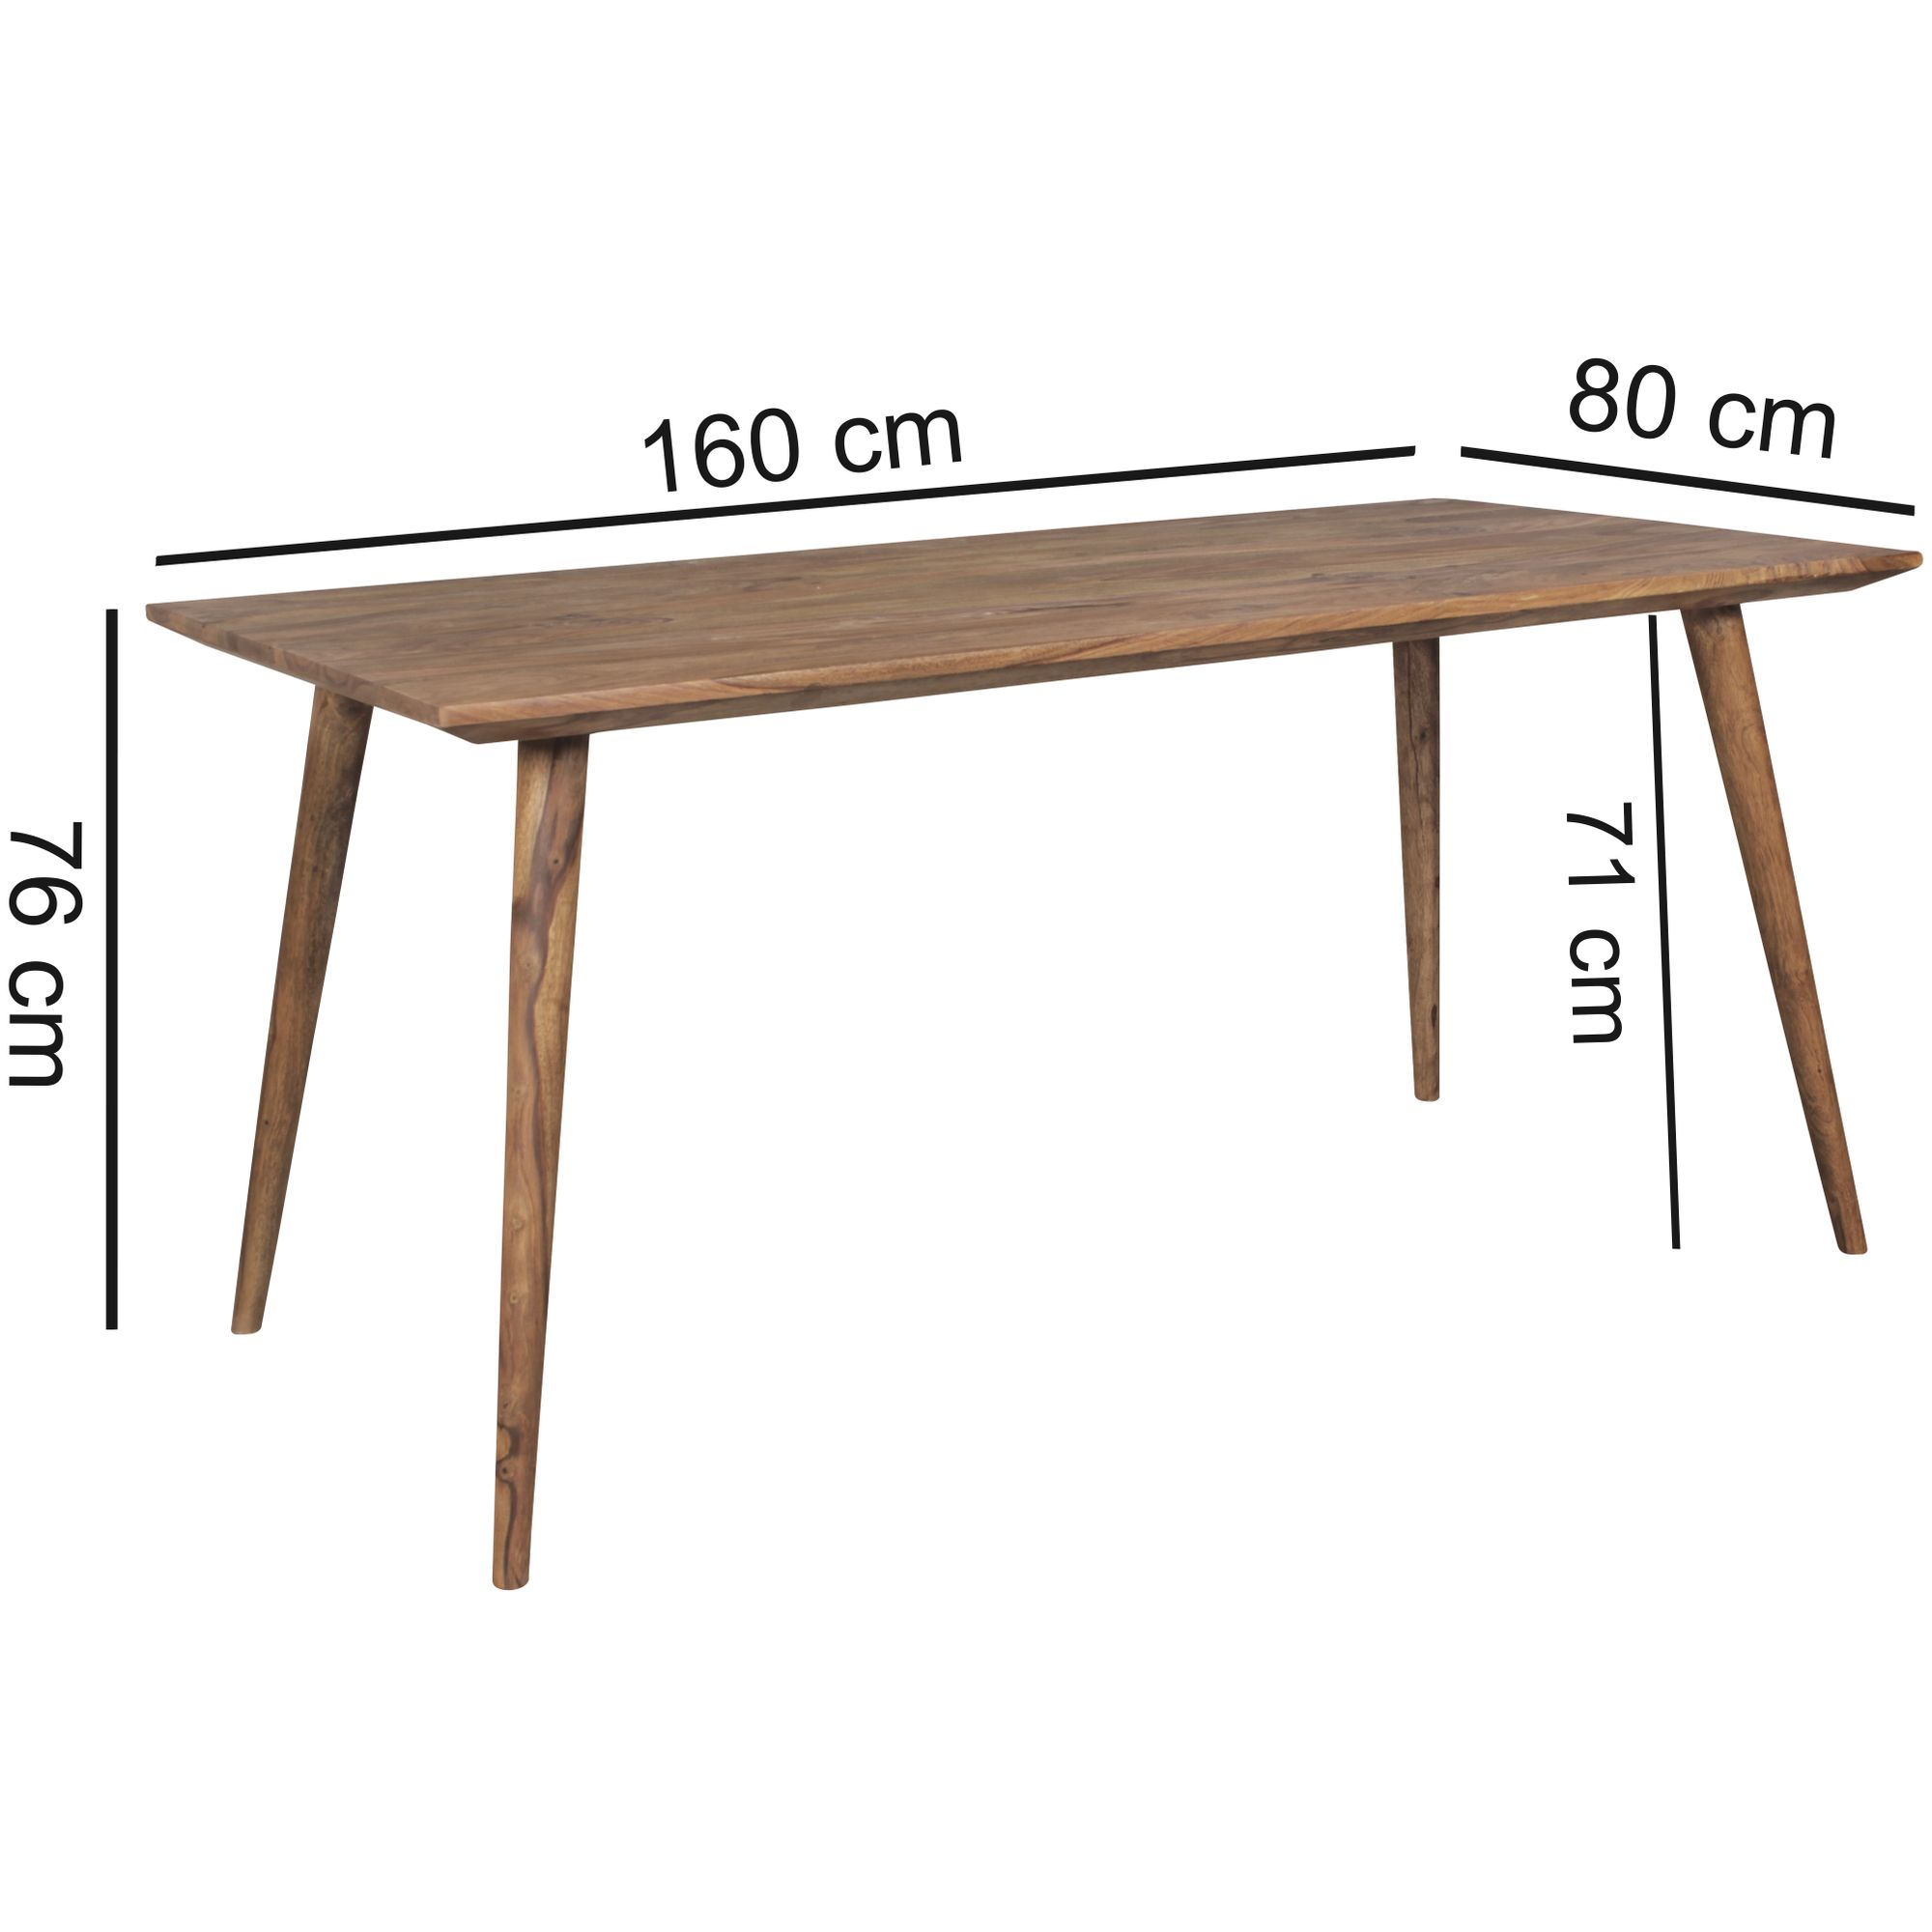 bloemblad Versnipperd Kluisje tafel sheesham 160 cm - Hoogglans meubelen / mango houten meubelen | Aktie  Wonen.nl